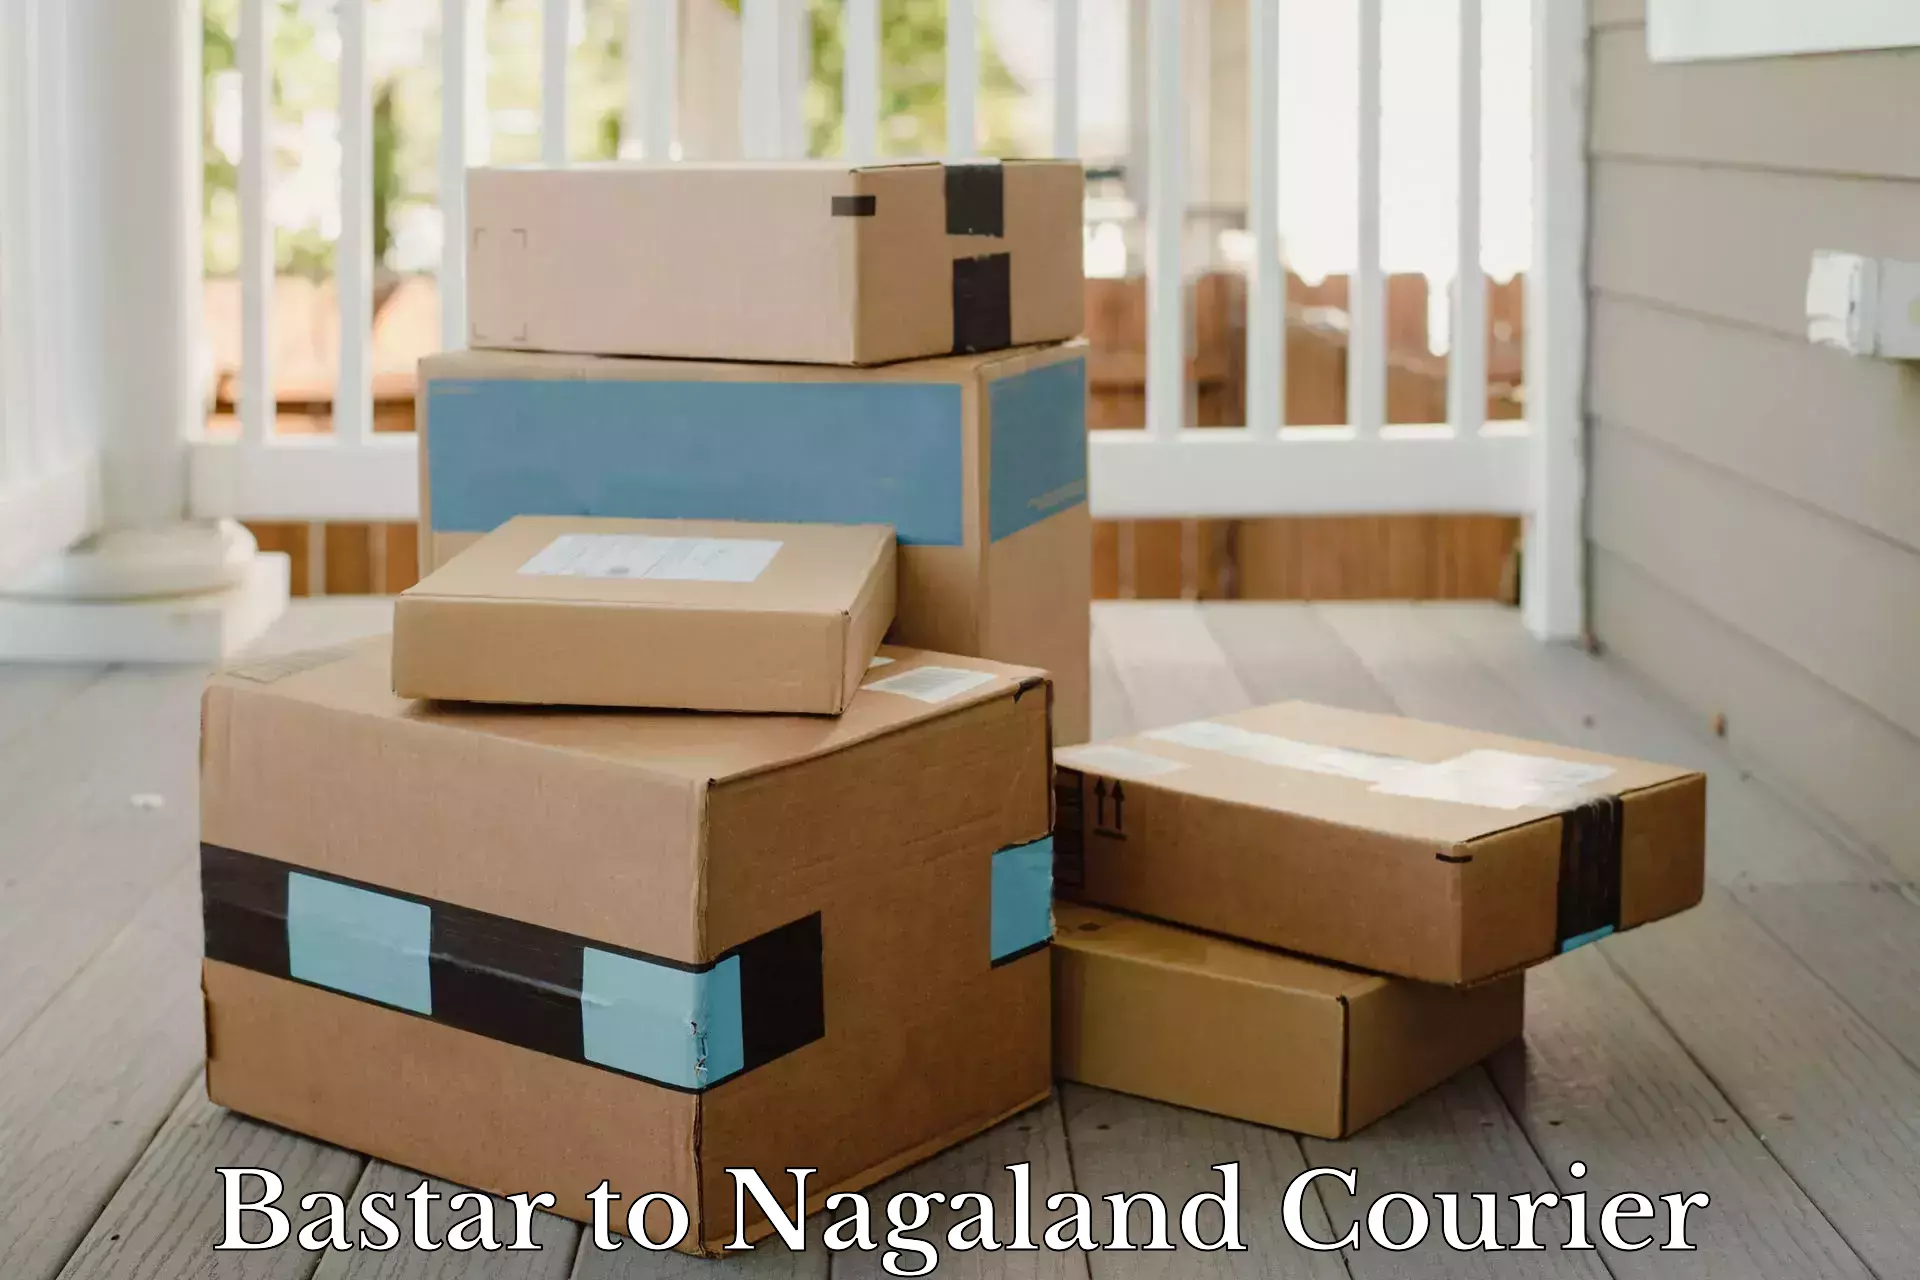 24-hour courier service Bastar to Nagaland